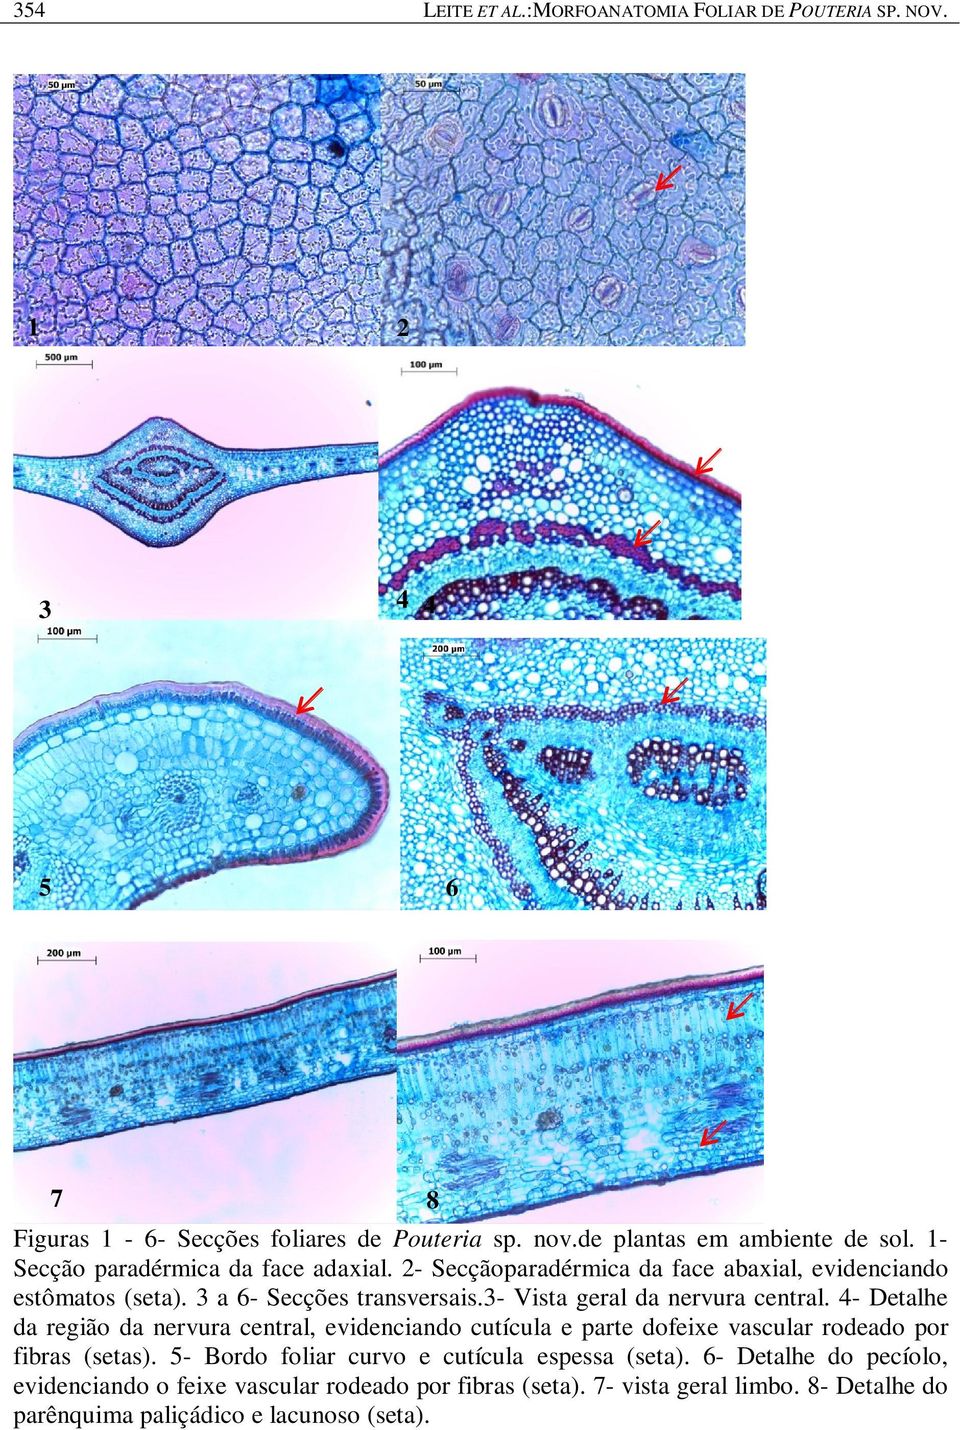 3- Vista geral da nervura central. 4- Detalhe da região da nervura central, evidenciando cutícula e parte dofeixe vascular rodeado por fibras (setas).